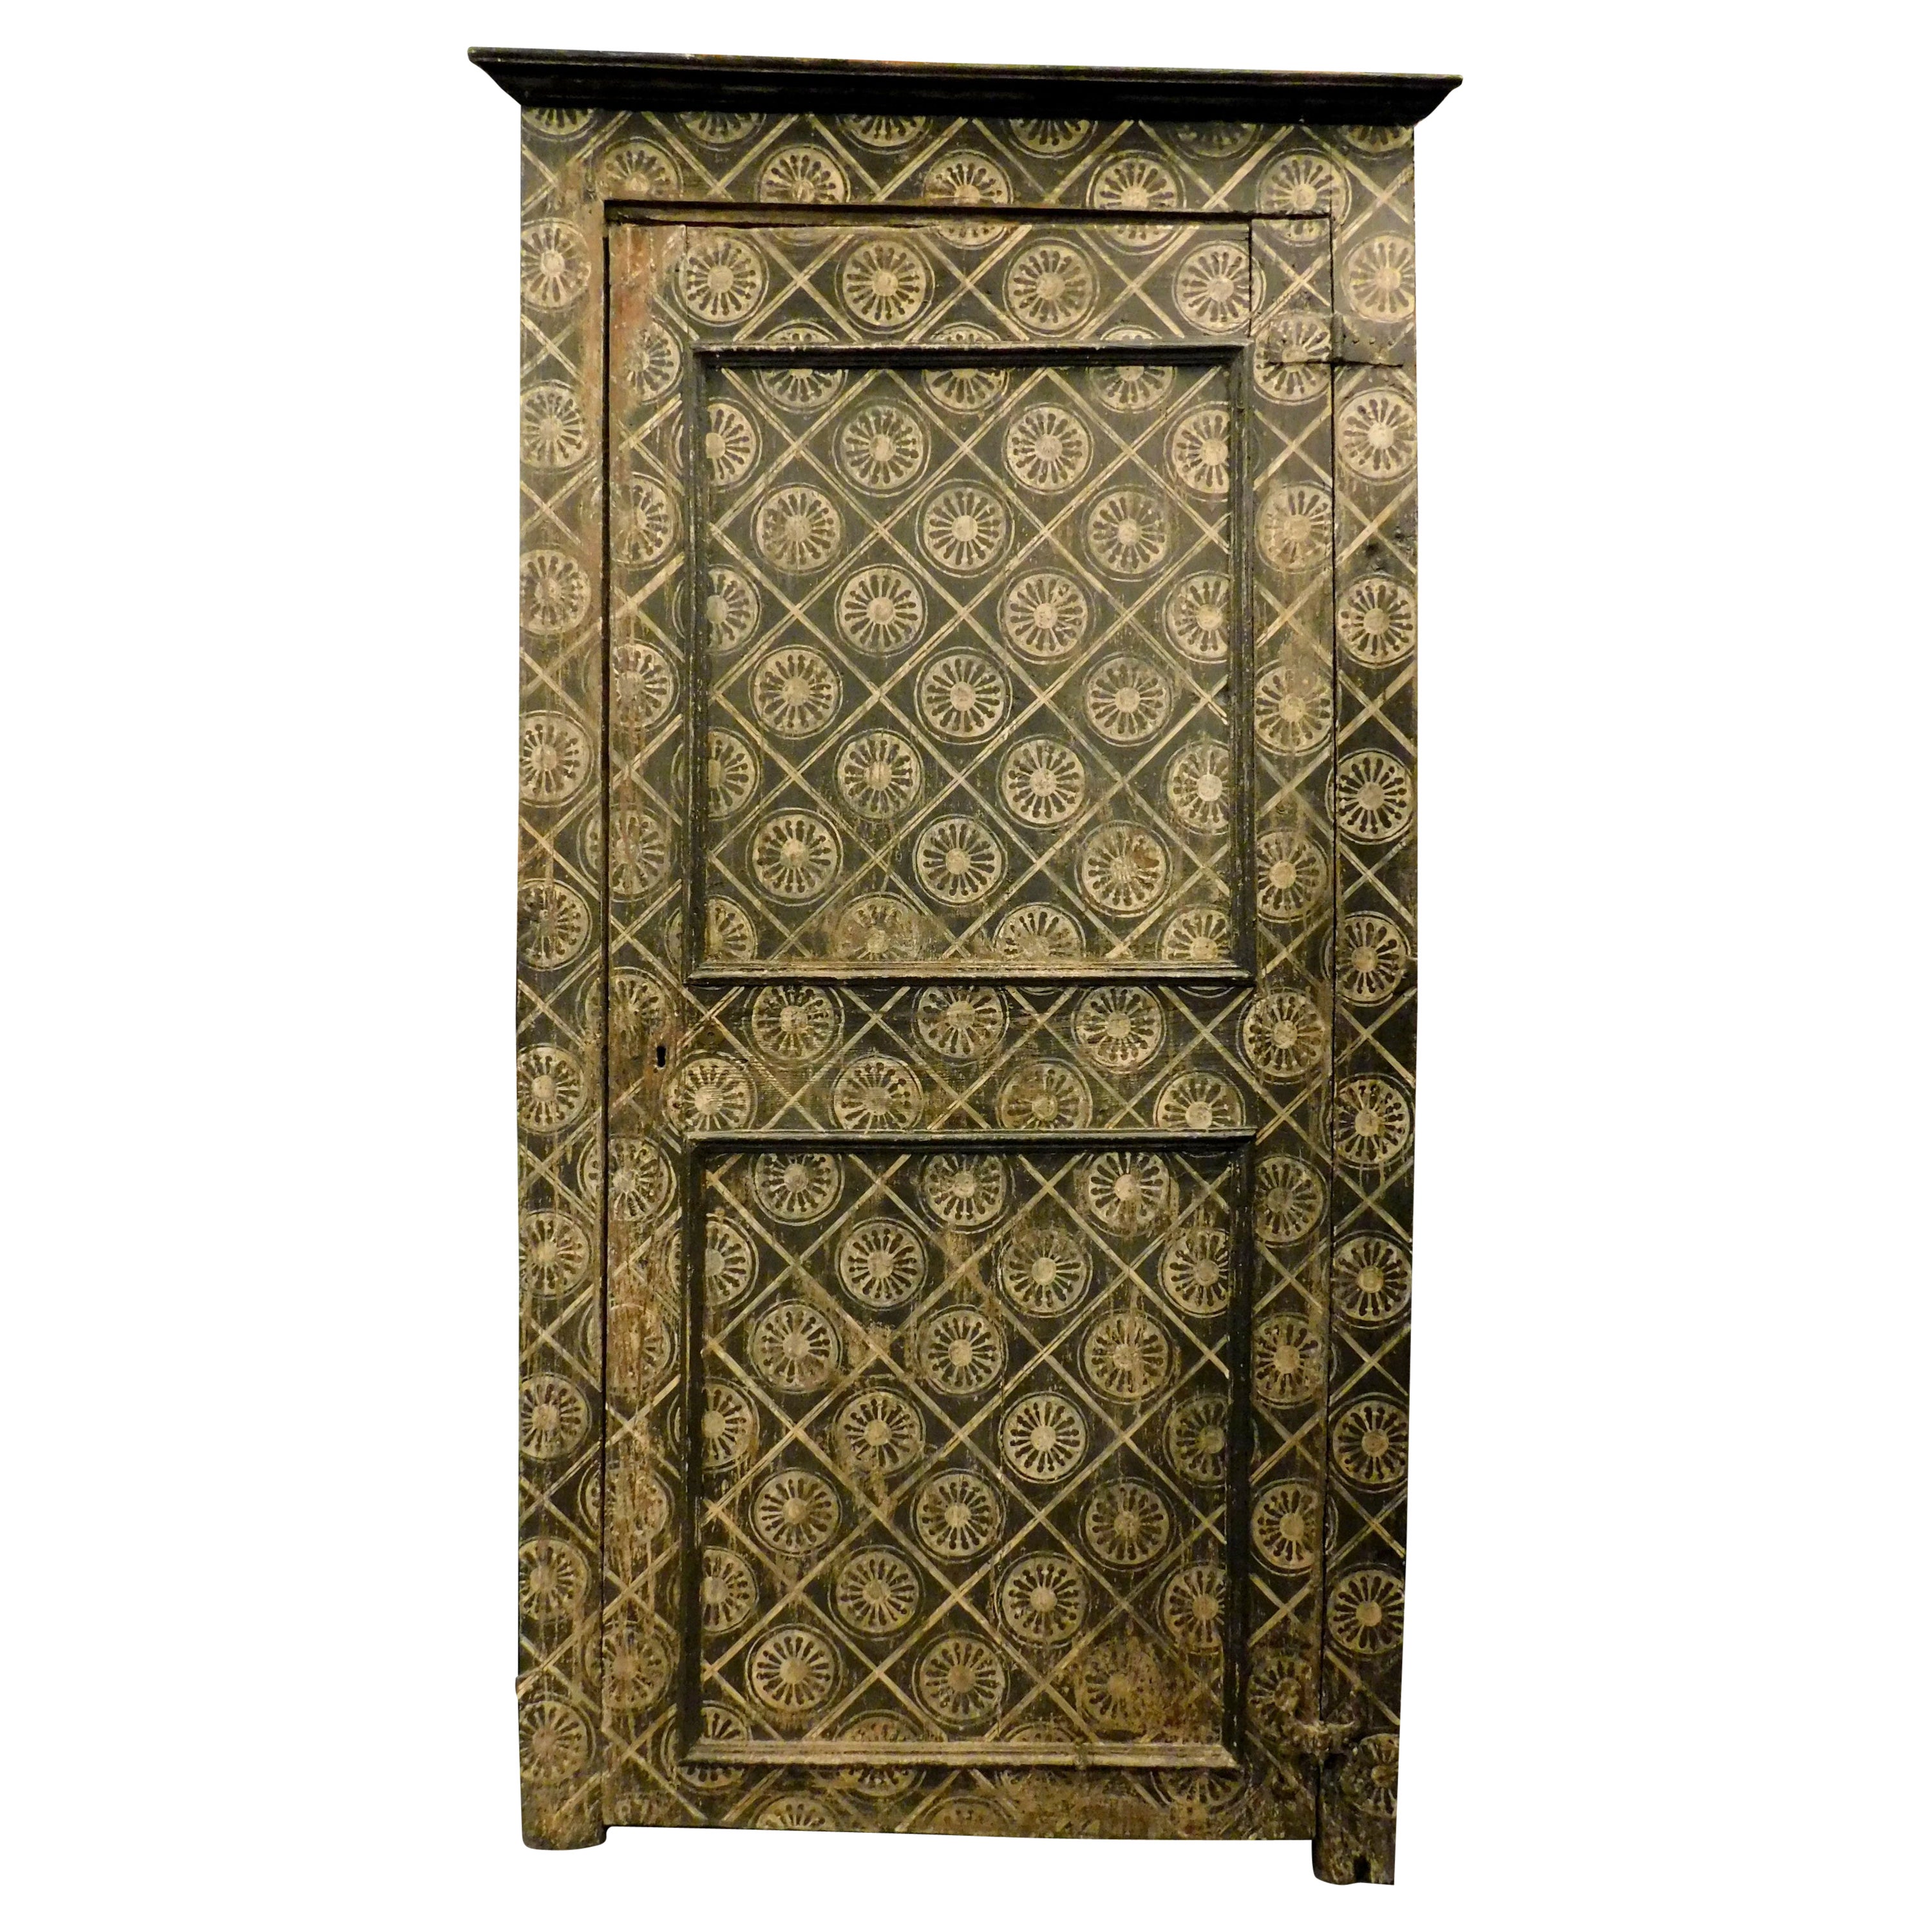 Antikes Plakat, Wandschrank oder kleine Tür, lackiert mit Wandteppich,700 Italien